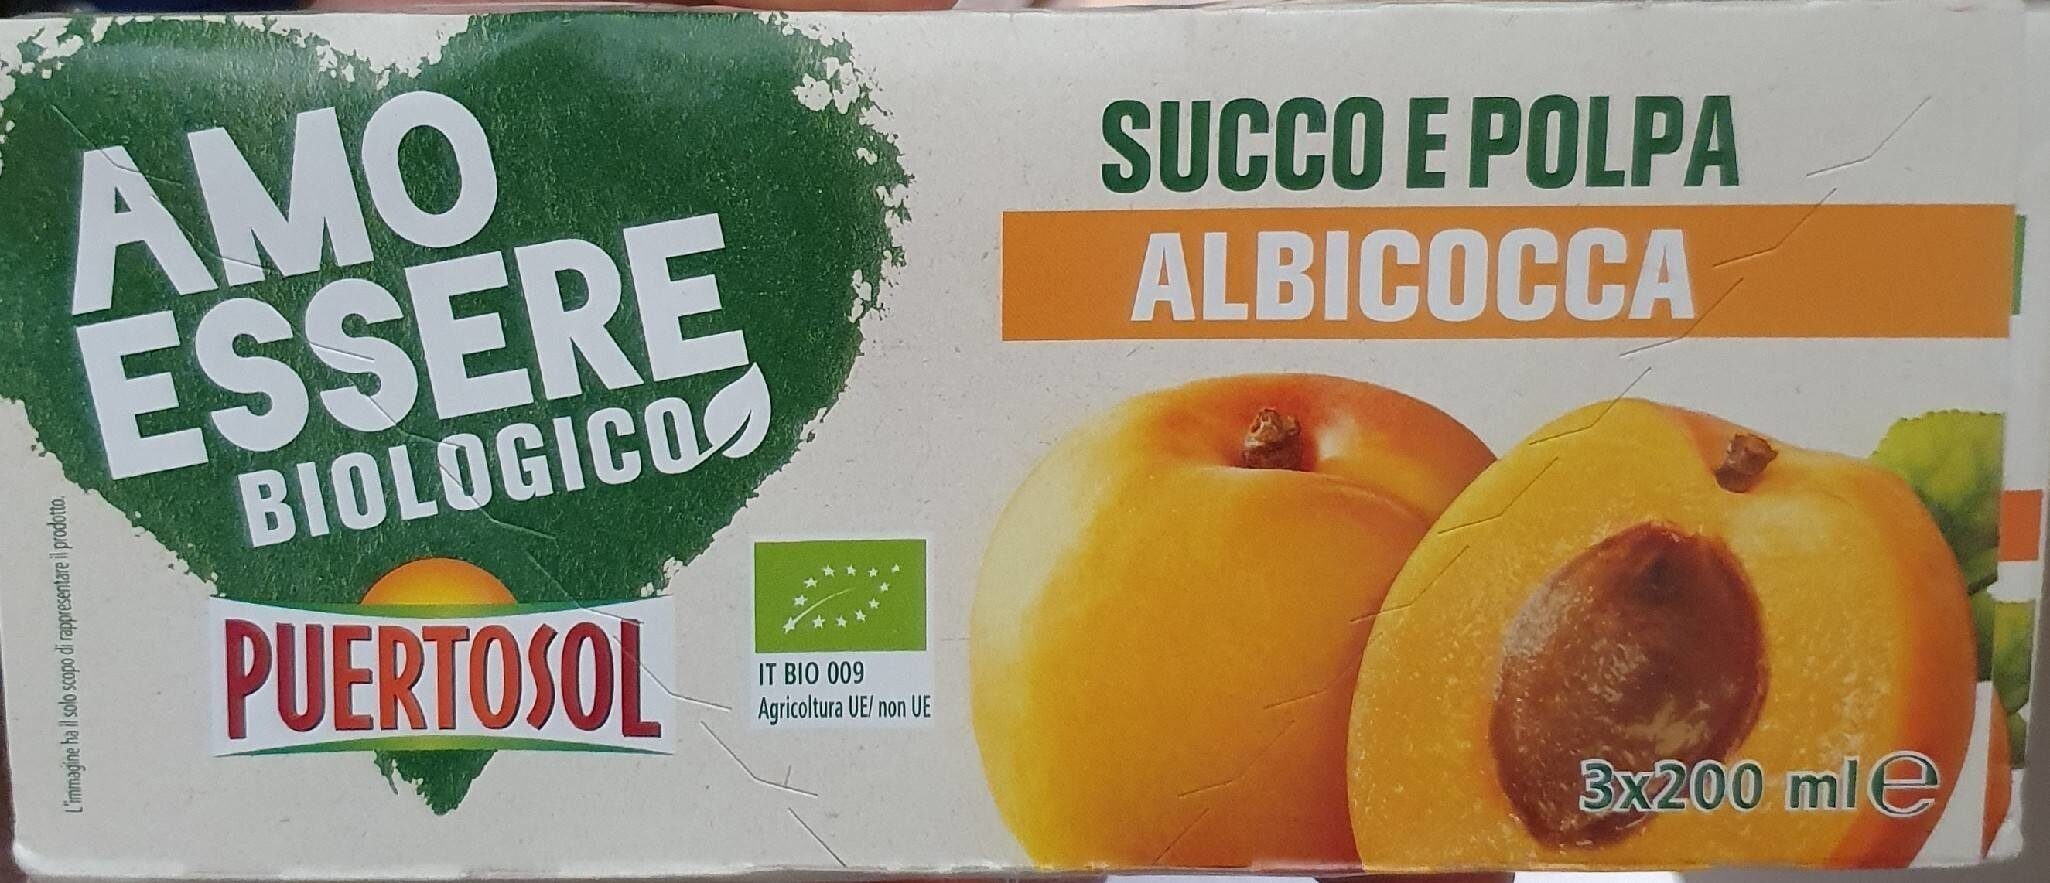 Succo e Polpa "Amo Essere" Albicocca - Producto - it